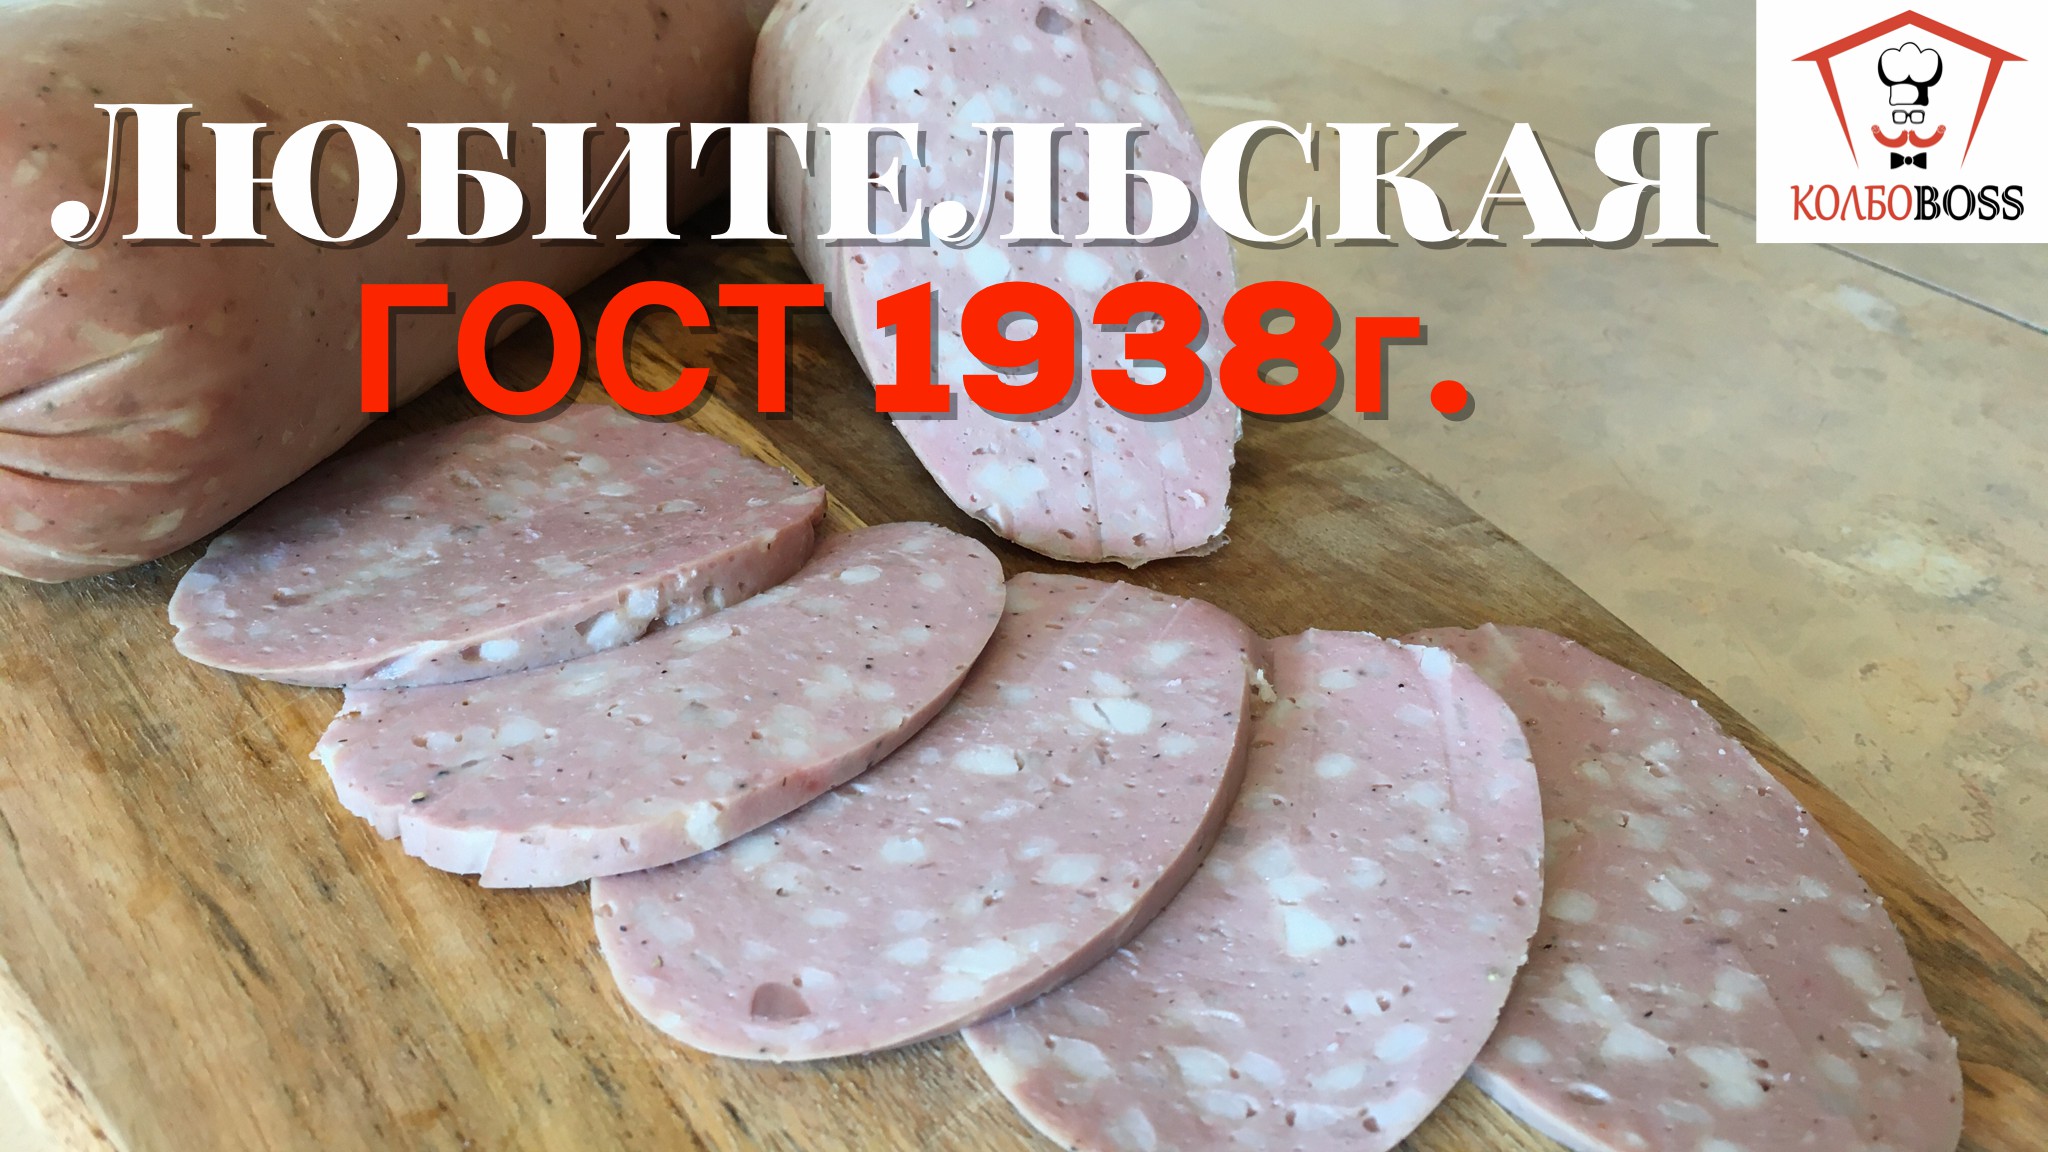 Рецептура колбасы Любительской